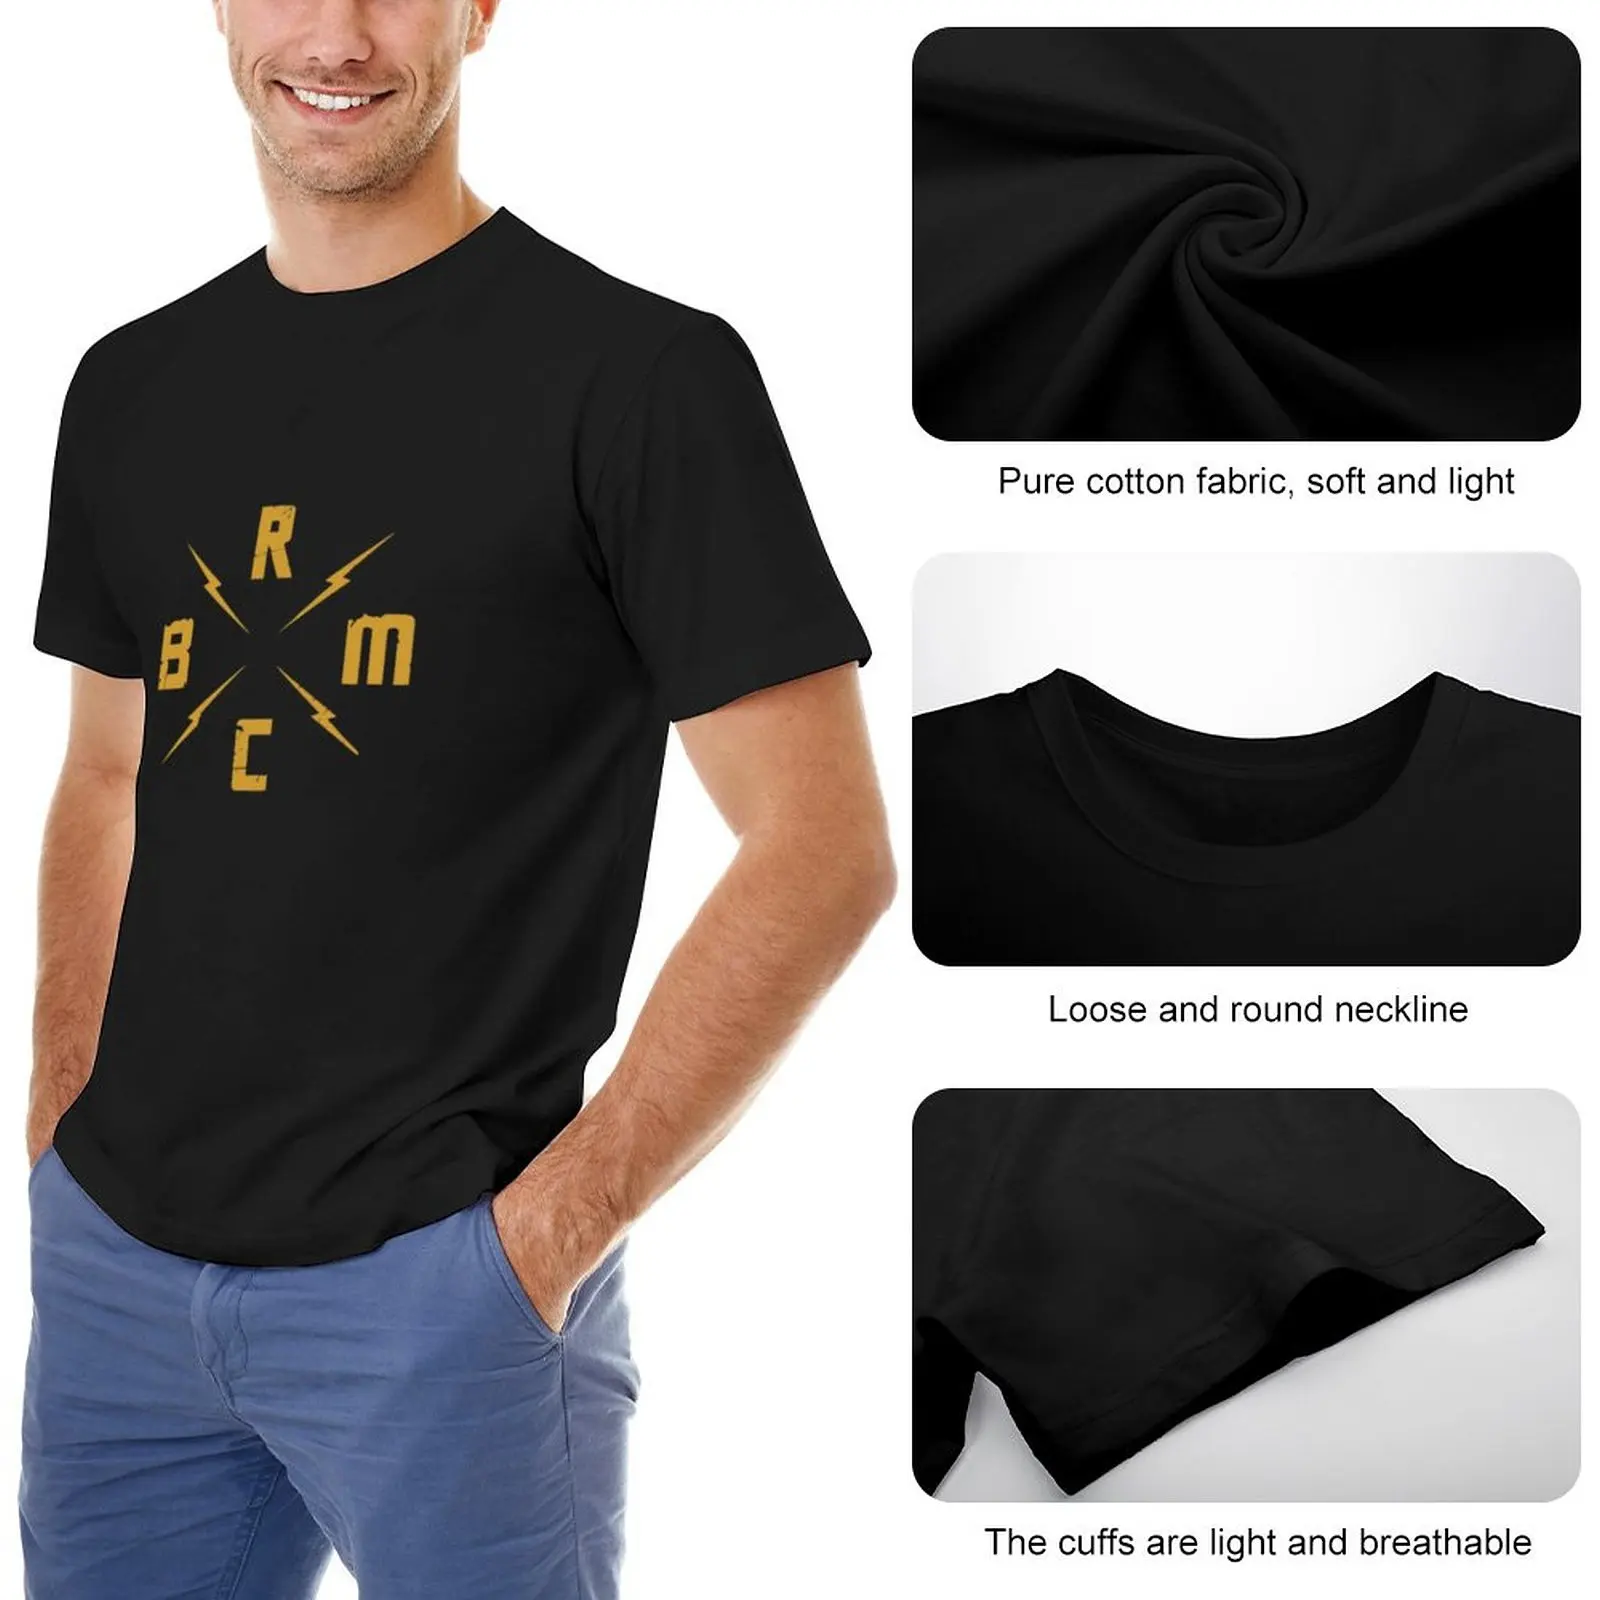 Популярная футболка с логотипом BRMC, футболка с животным принтом, футболки для мальчиков, однотонная футболка, забавная футболка, мужская футболка Изображение 1